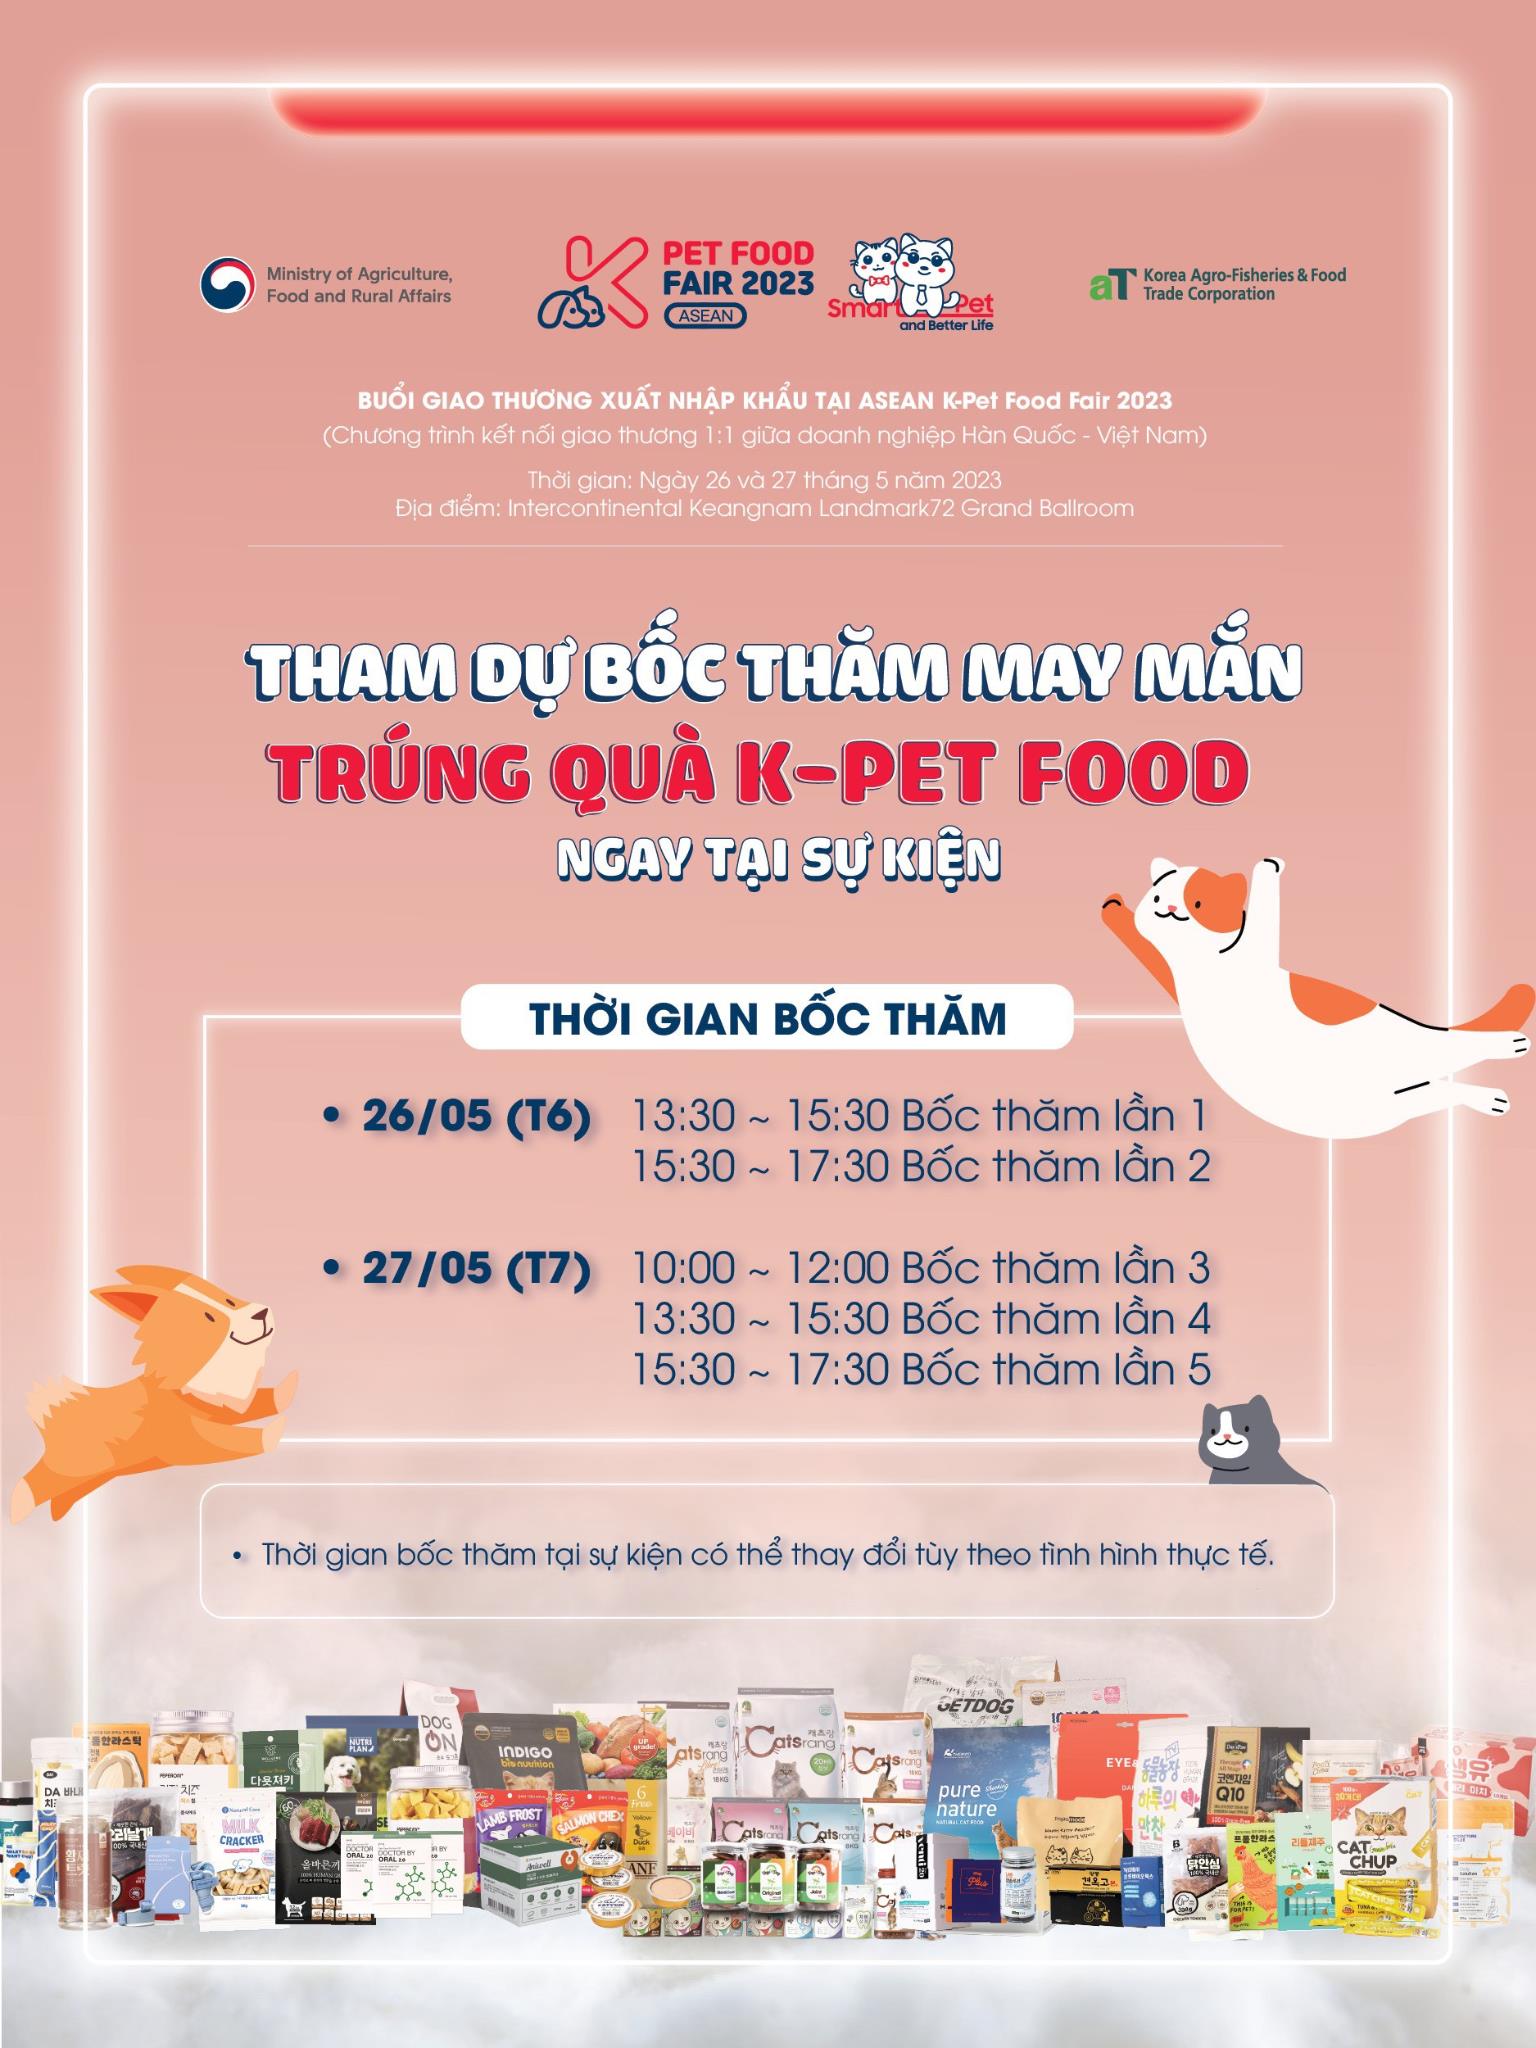 K-Pet Food Fair 2023 - Chương trình kết nối giao thương 1:1 hấp dẫn giữa doanh nghiệp Hàn Quốc và Việt Nam - Ảnh 1.